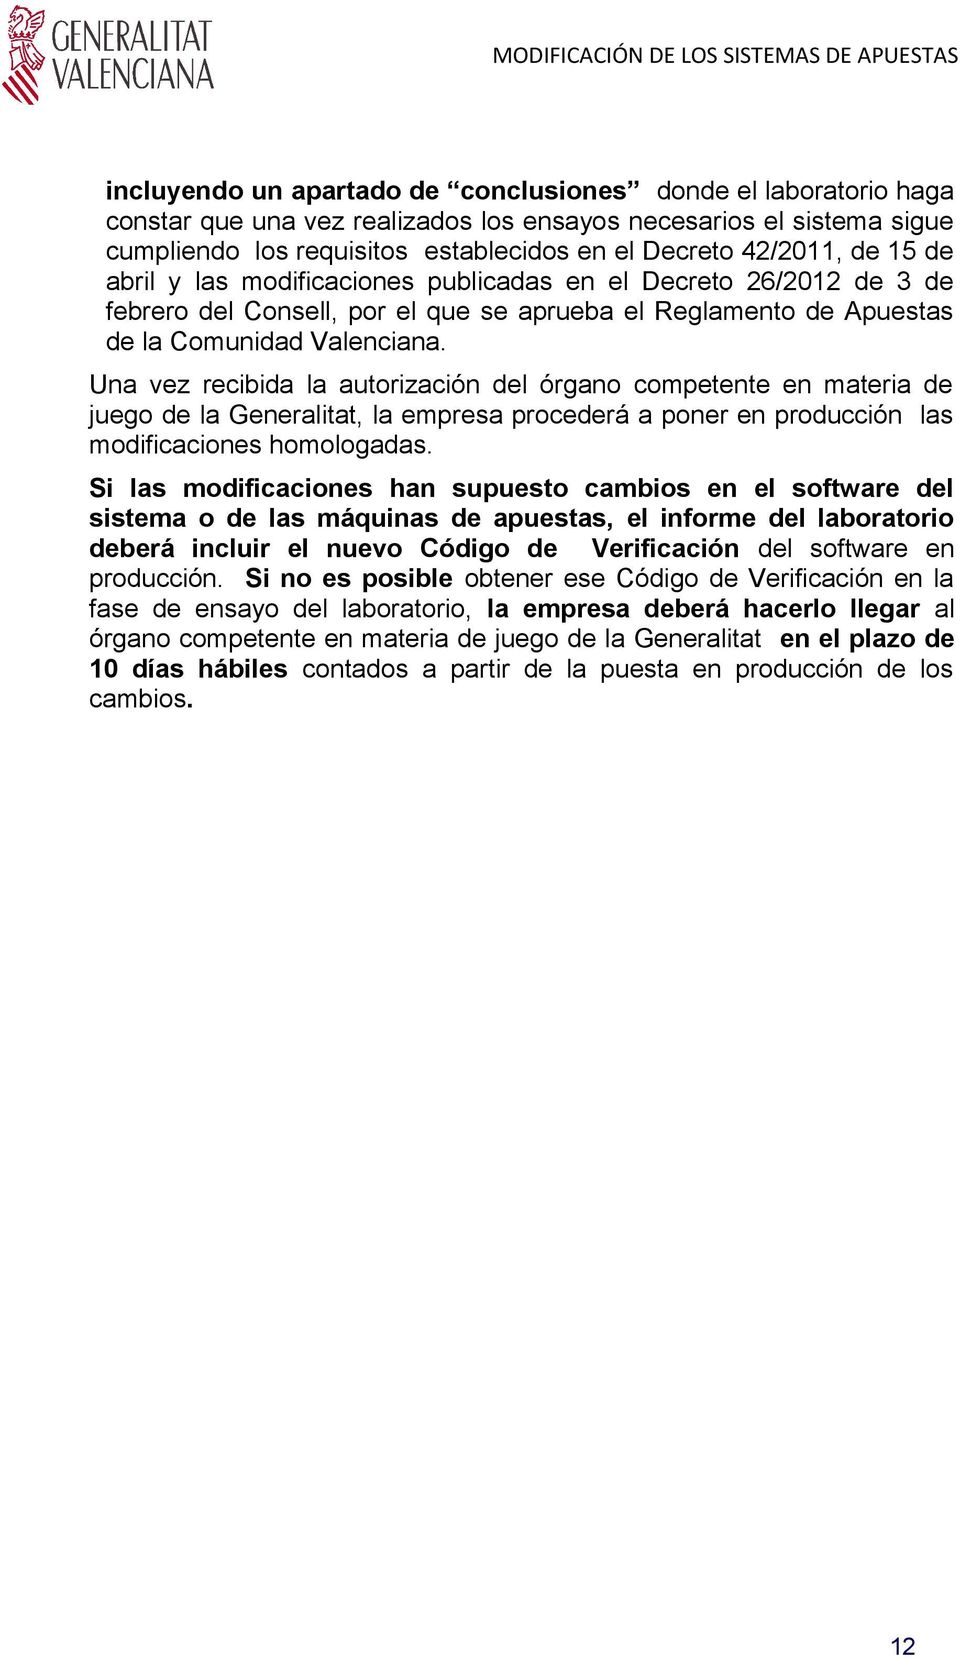 Una vez recibida la autorización del órgano competente en materia de juego de la Generalitat, la empresa procederá a poner en producción las modificaciones homologadas.